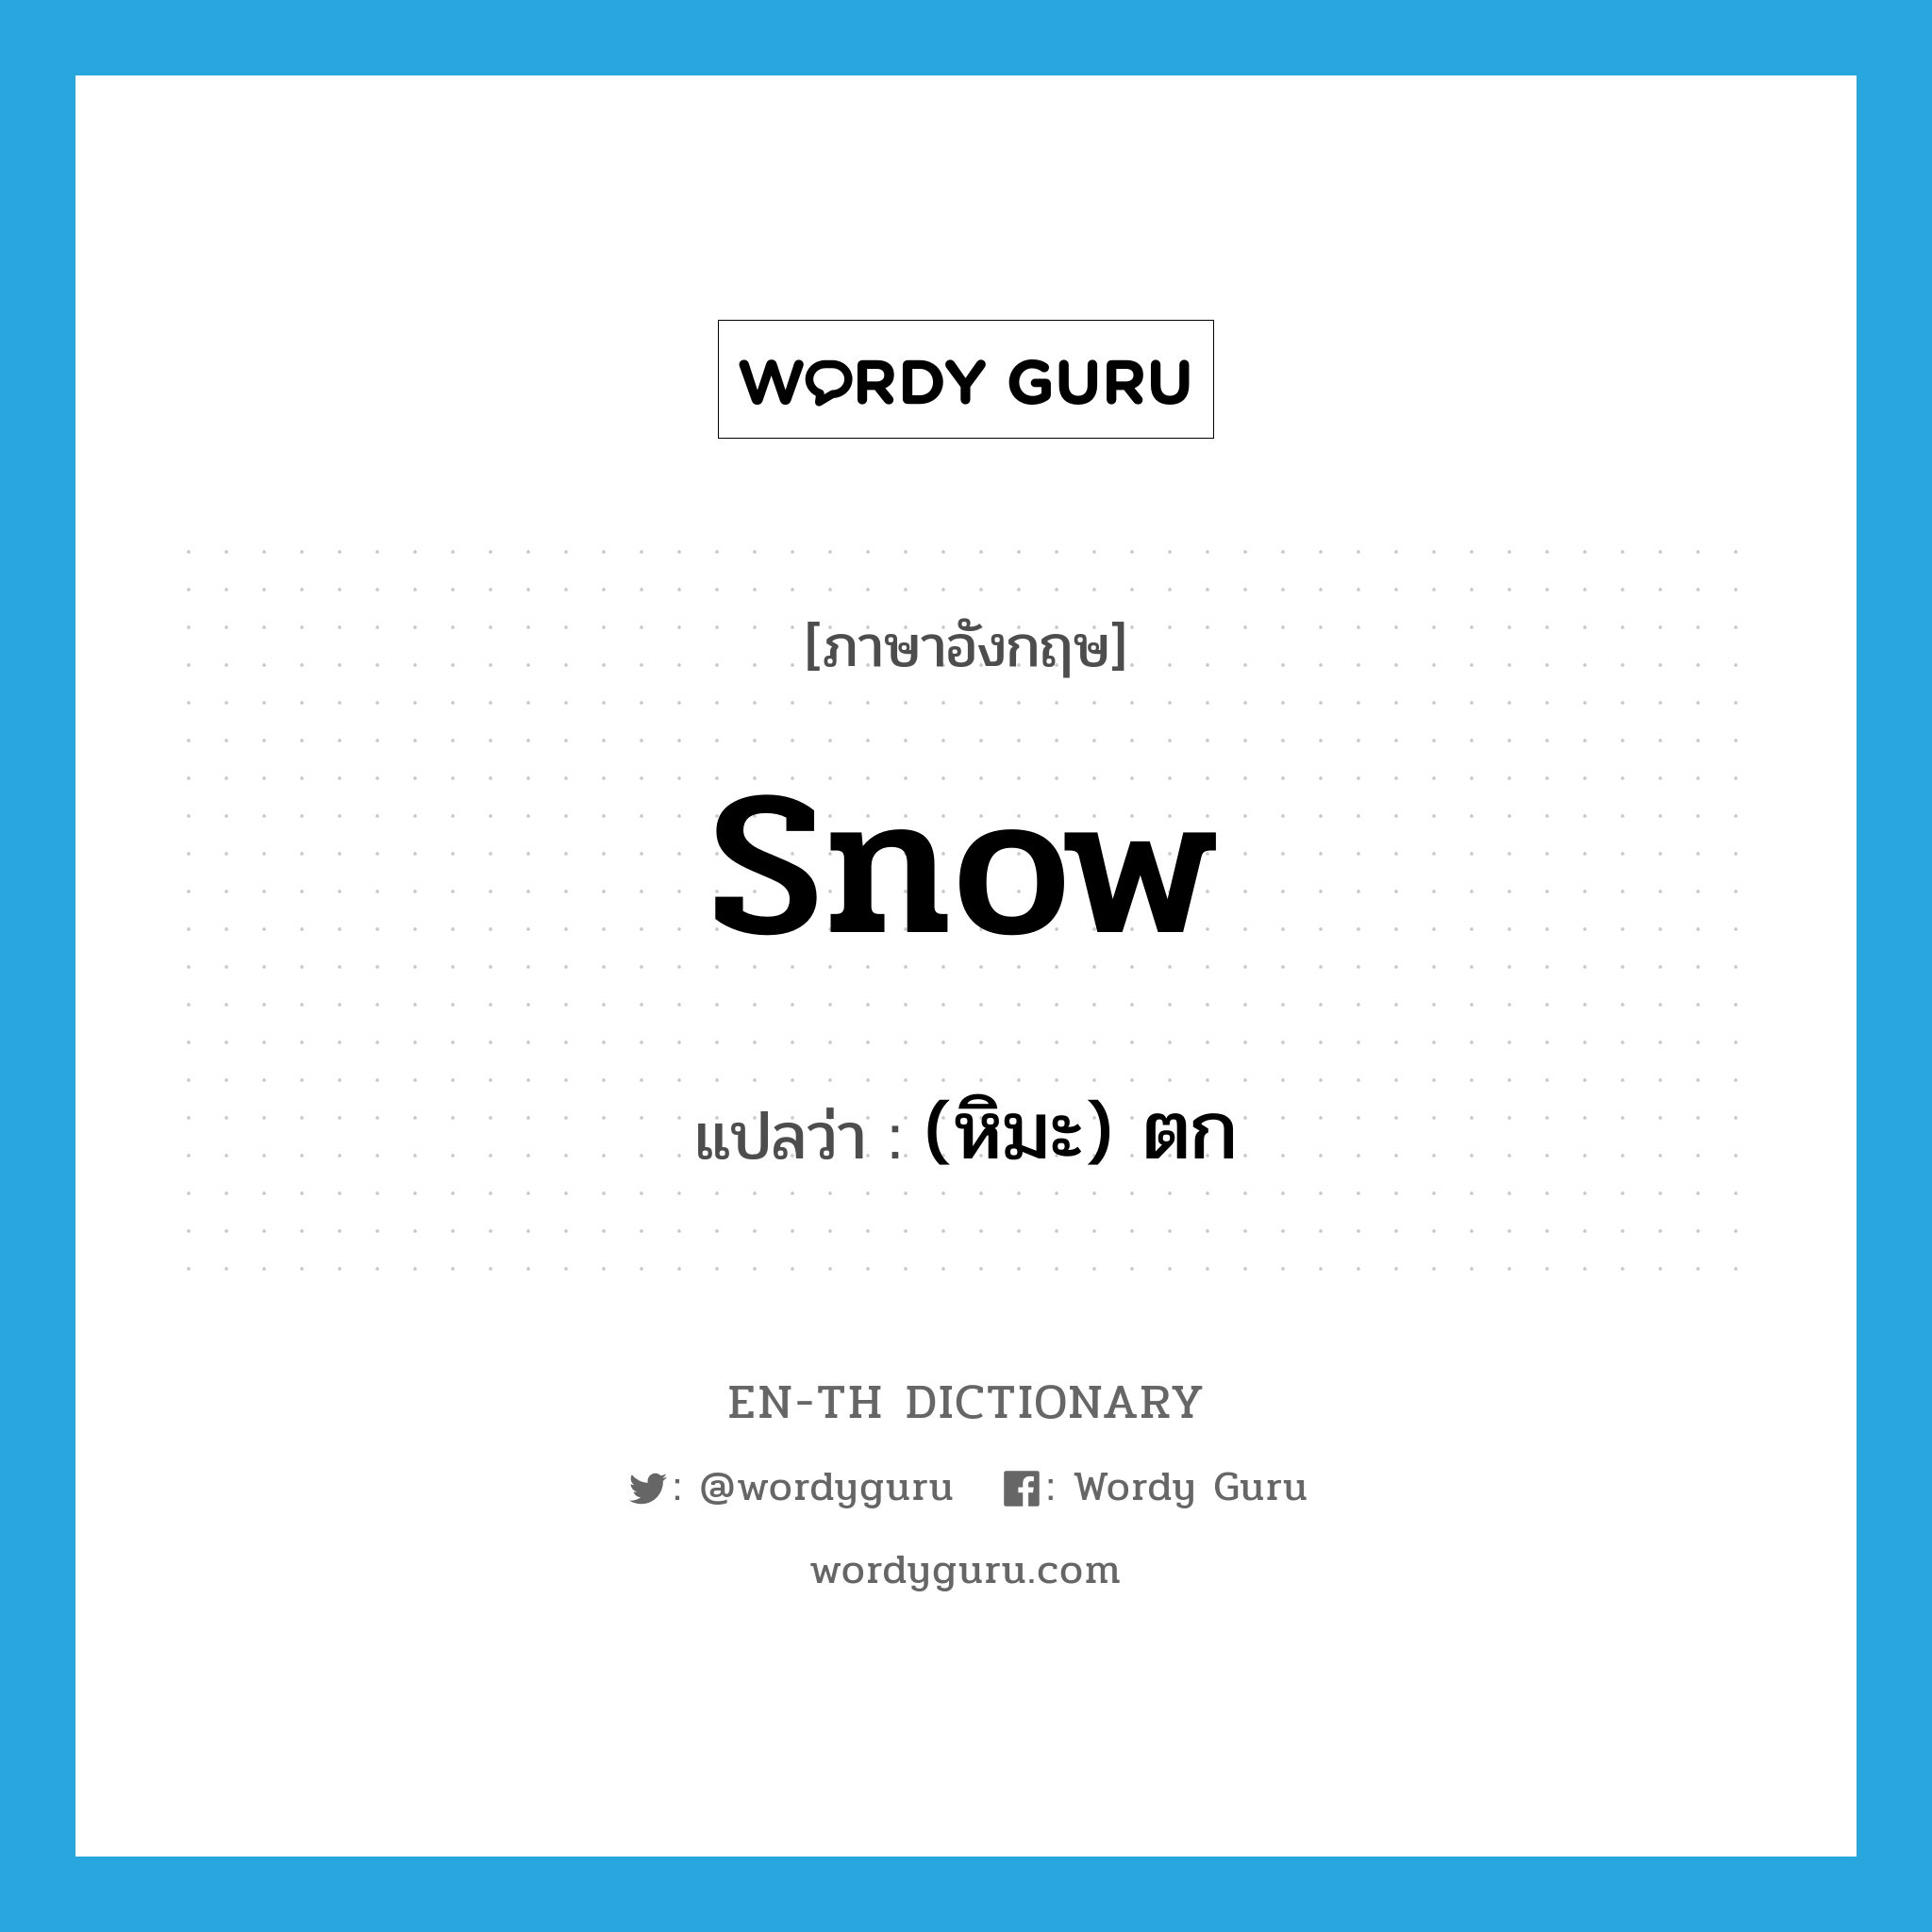 (หิมะ) ตก ภาษาอังกฤษ?, คำศัพท์ภาษาอังกฤษ (หิมะ) ตก แปลว่า snow ประเภท VI หมวด VI